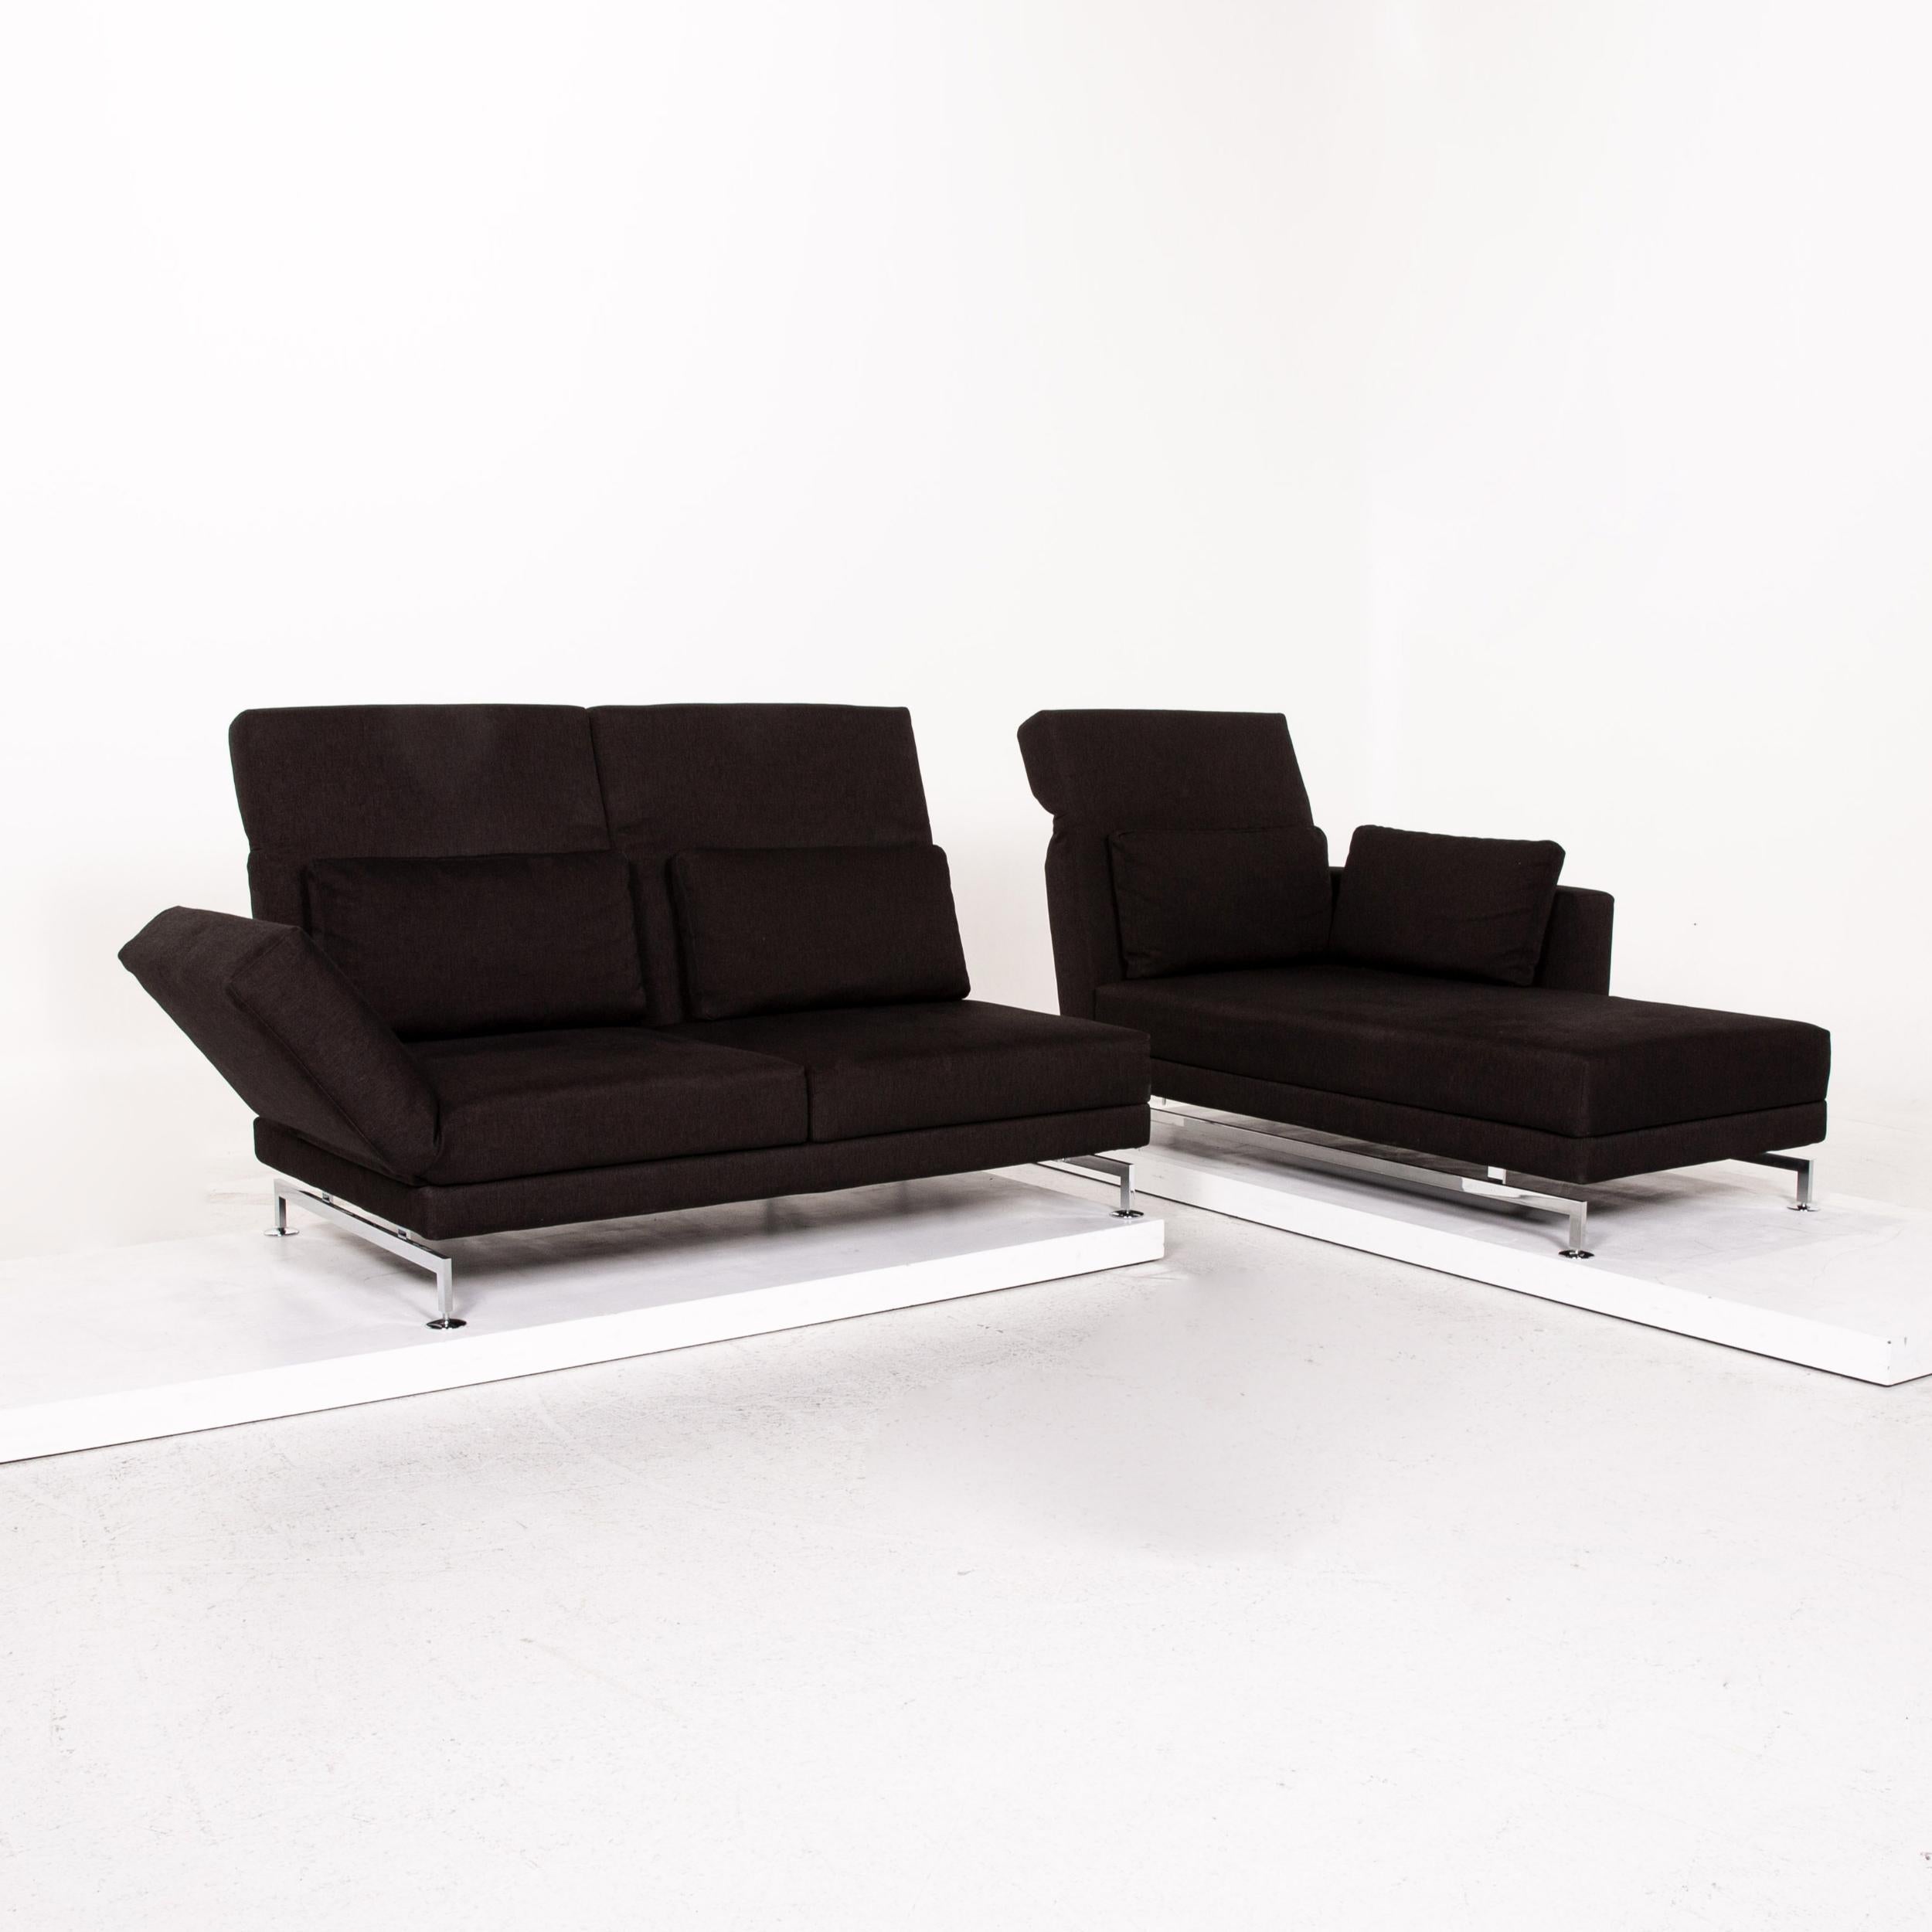 German Brühl & Sippold Moule Fabric Corner Sofa Brown Dark Brown Function Sleep For Sale